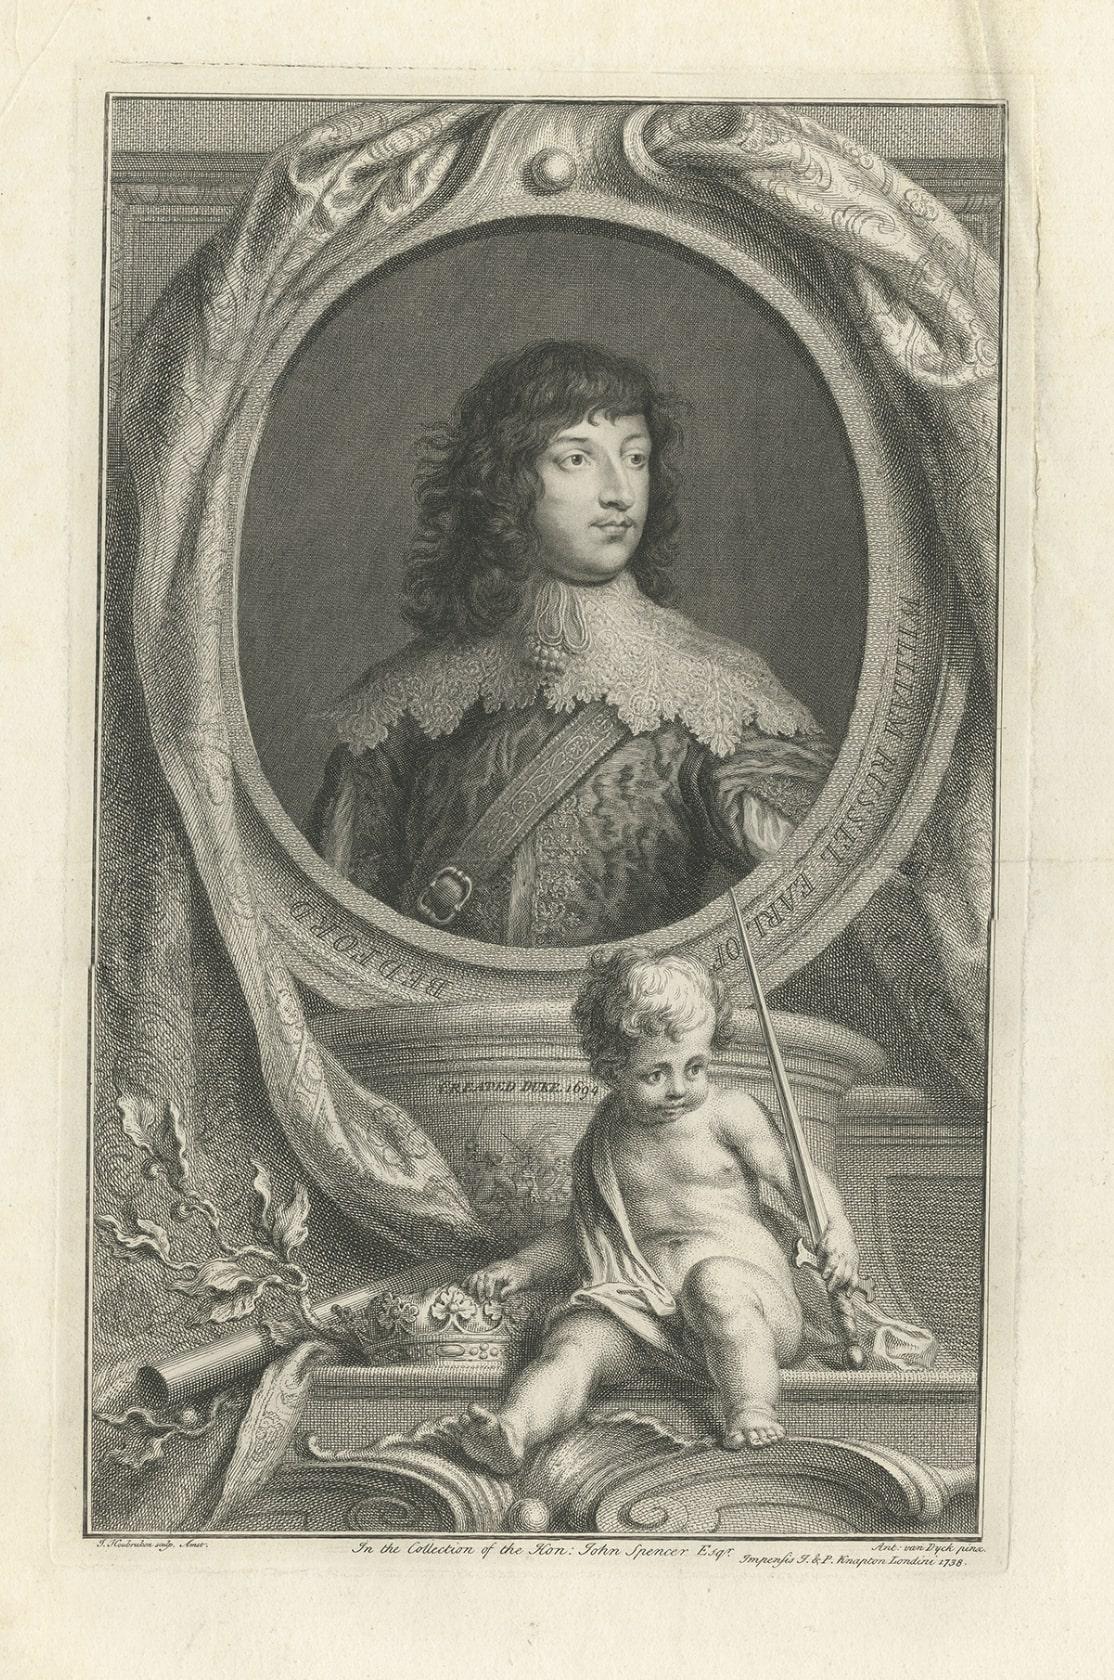 1st duke of polignac